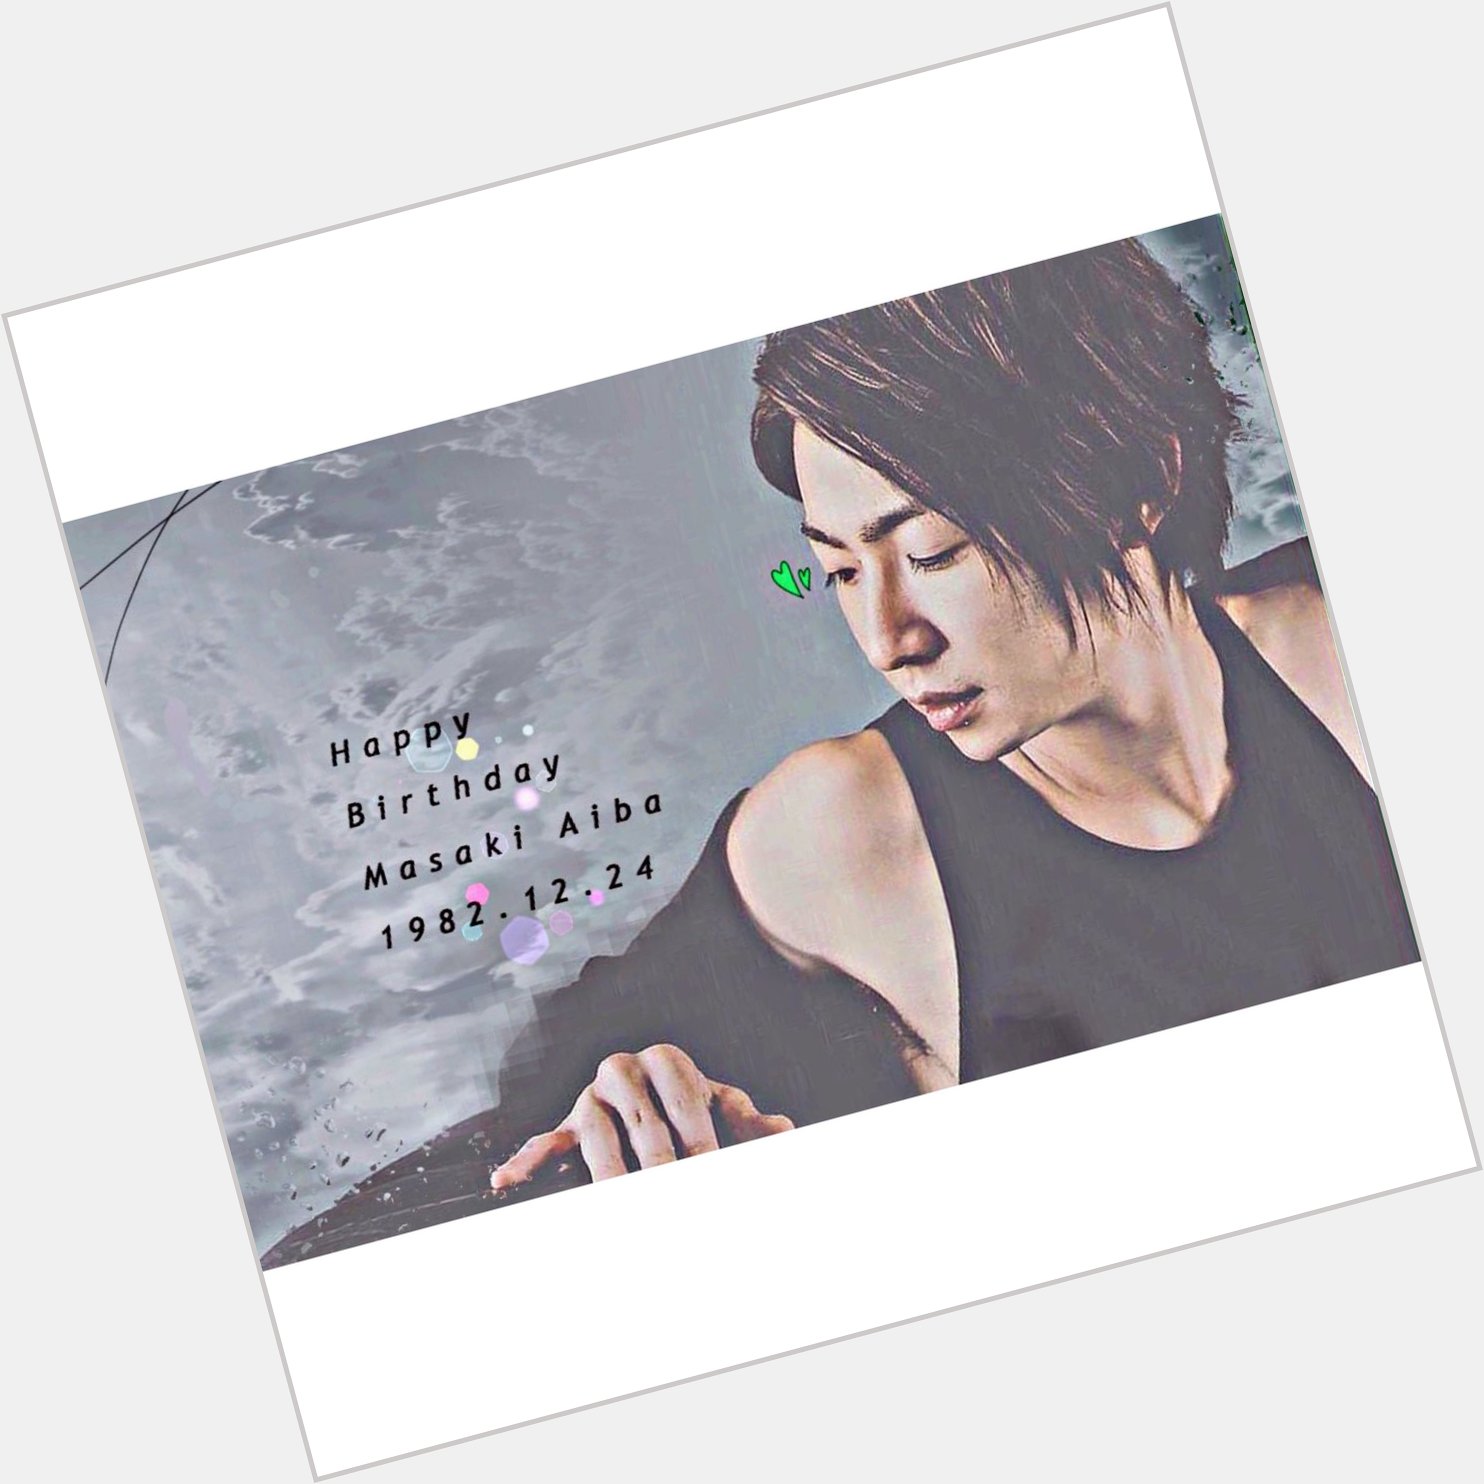 .
.
. Happy Birthday  Masaki Aiba .
.
. 